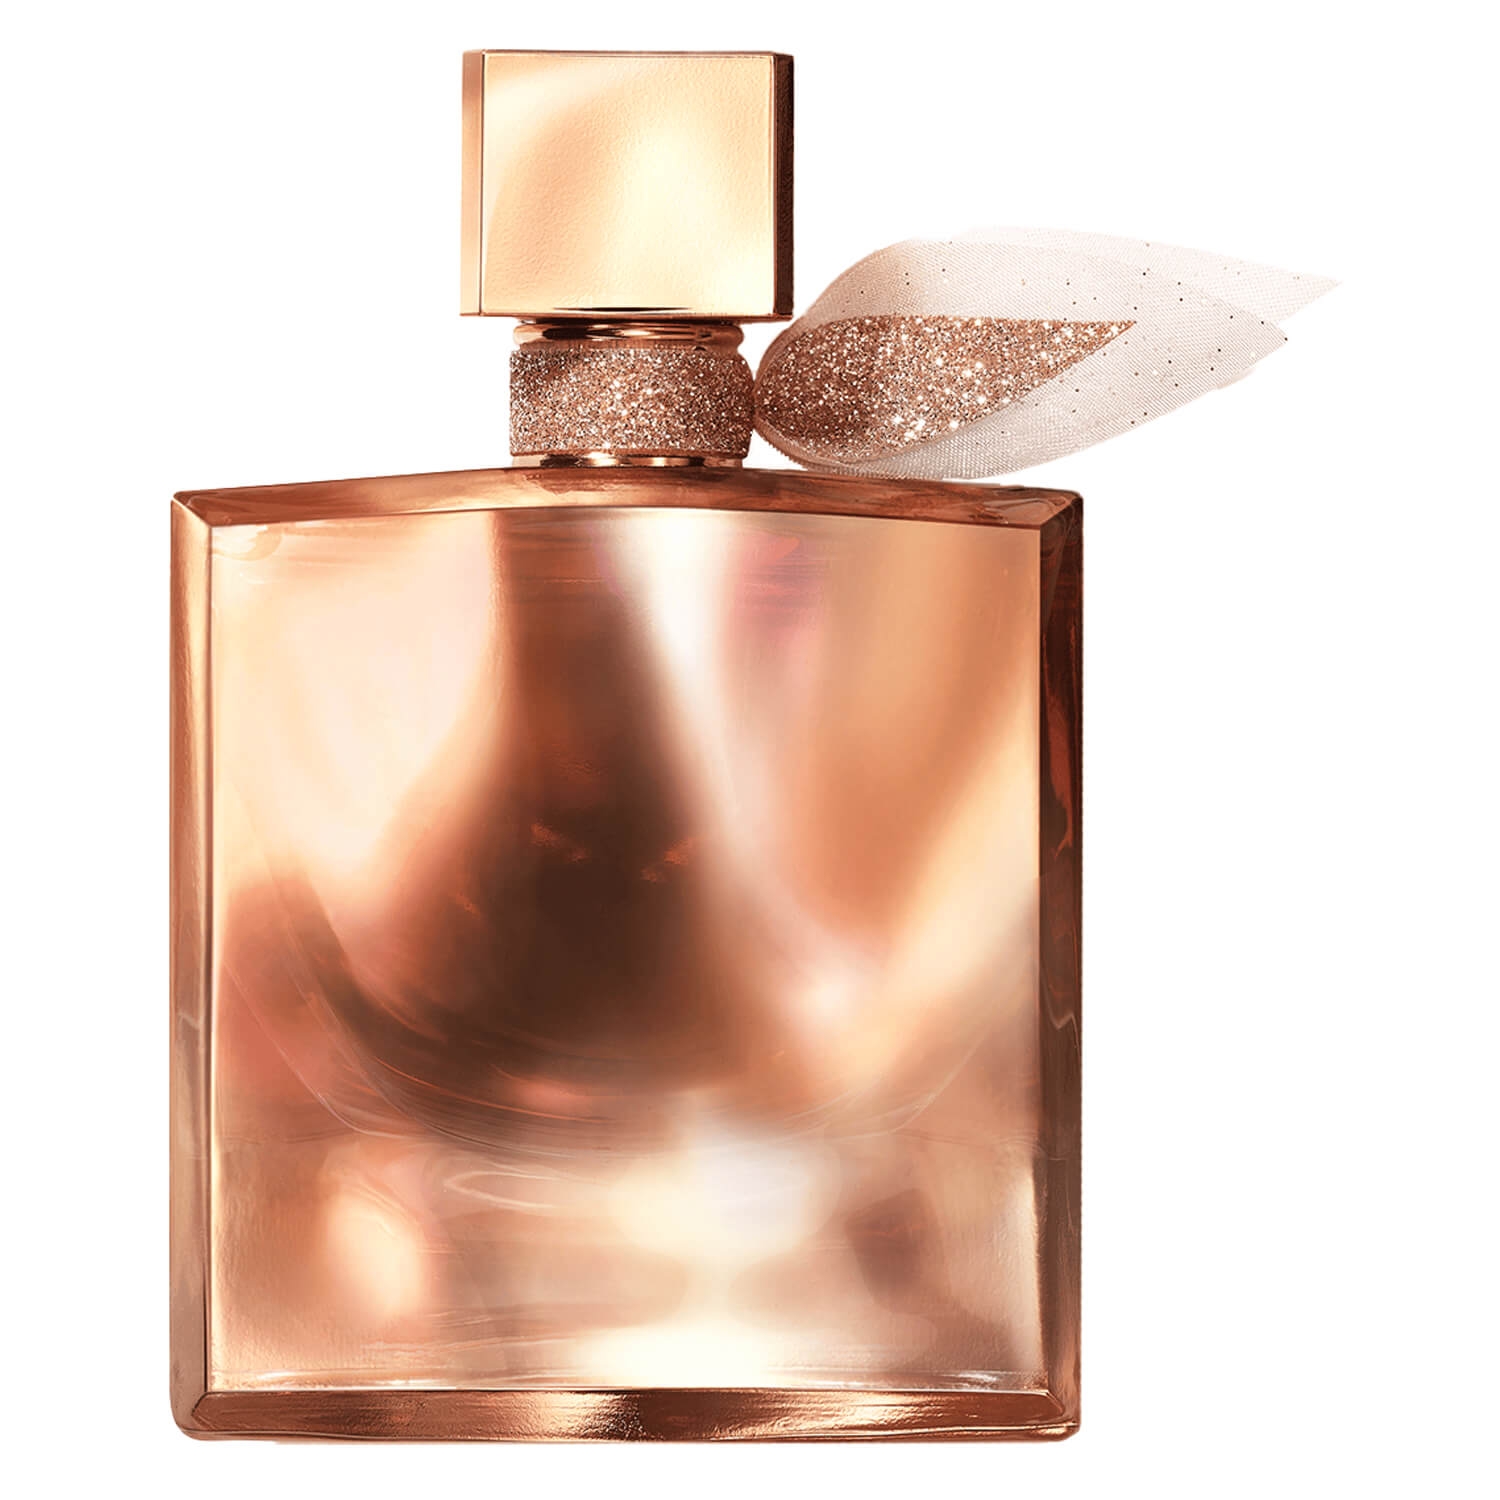 Produktbild von La Vie est Belle - L'Extrait Eau de Parfum